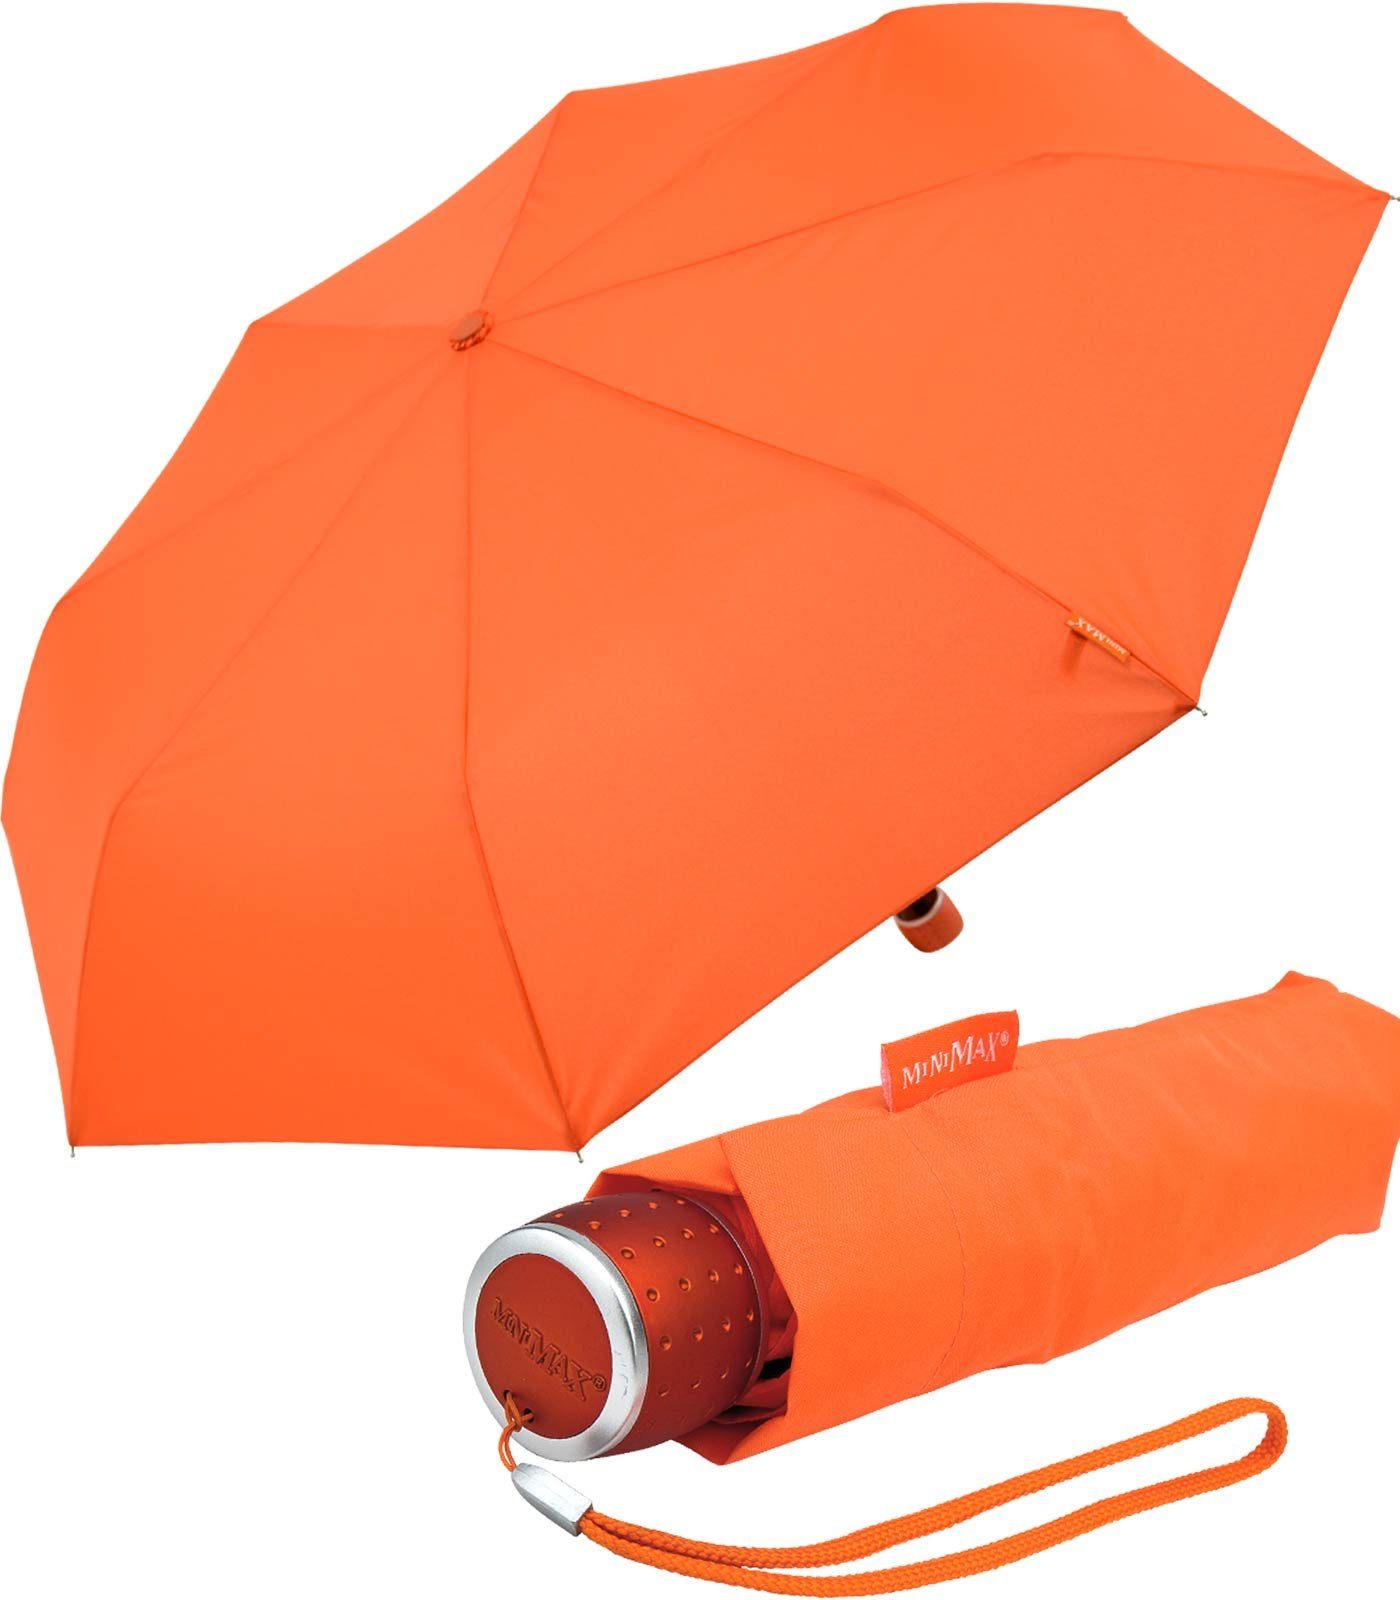 Taschenregenschirm jjede Tasche Handöffner, in leichter Impliva Schirm kleiner orange miniMAX® passt